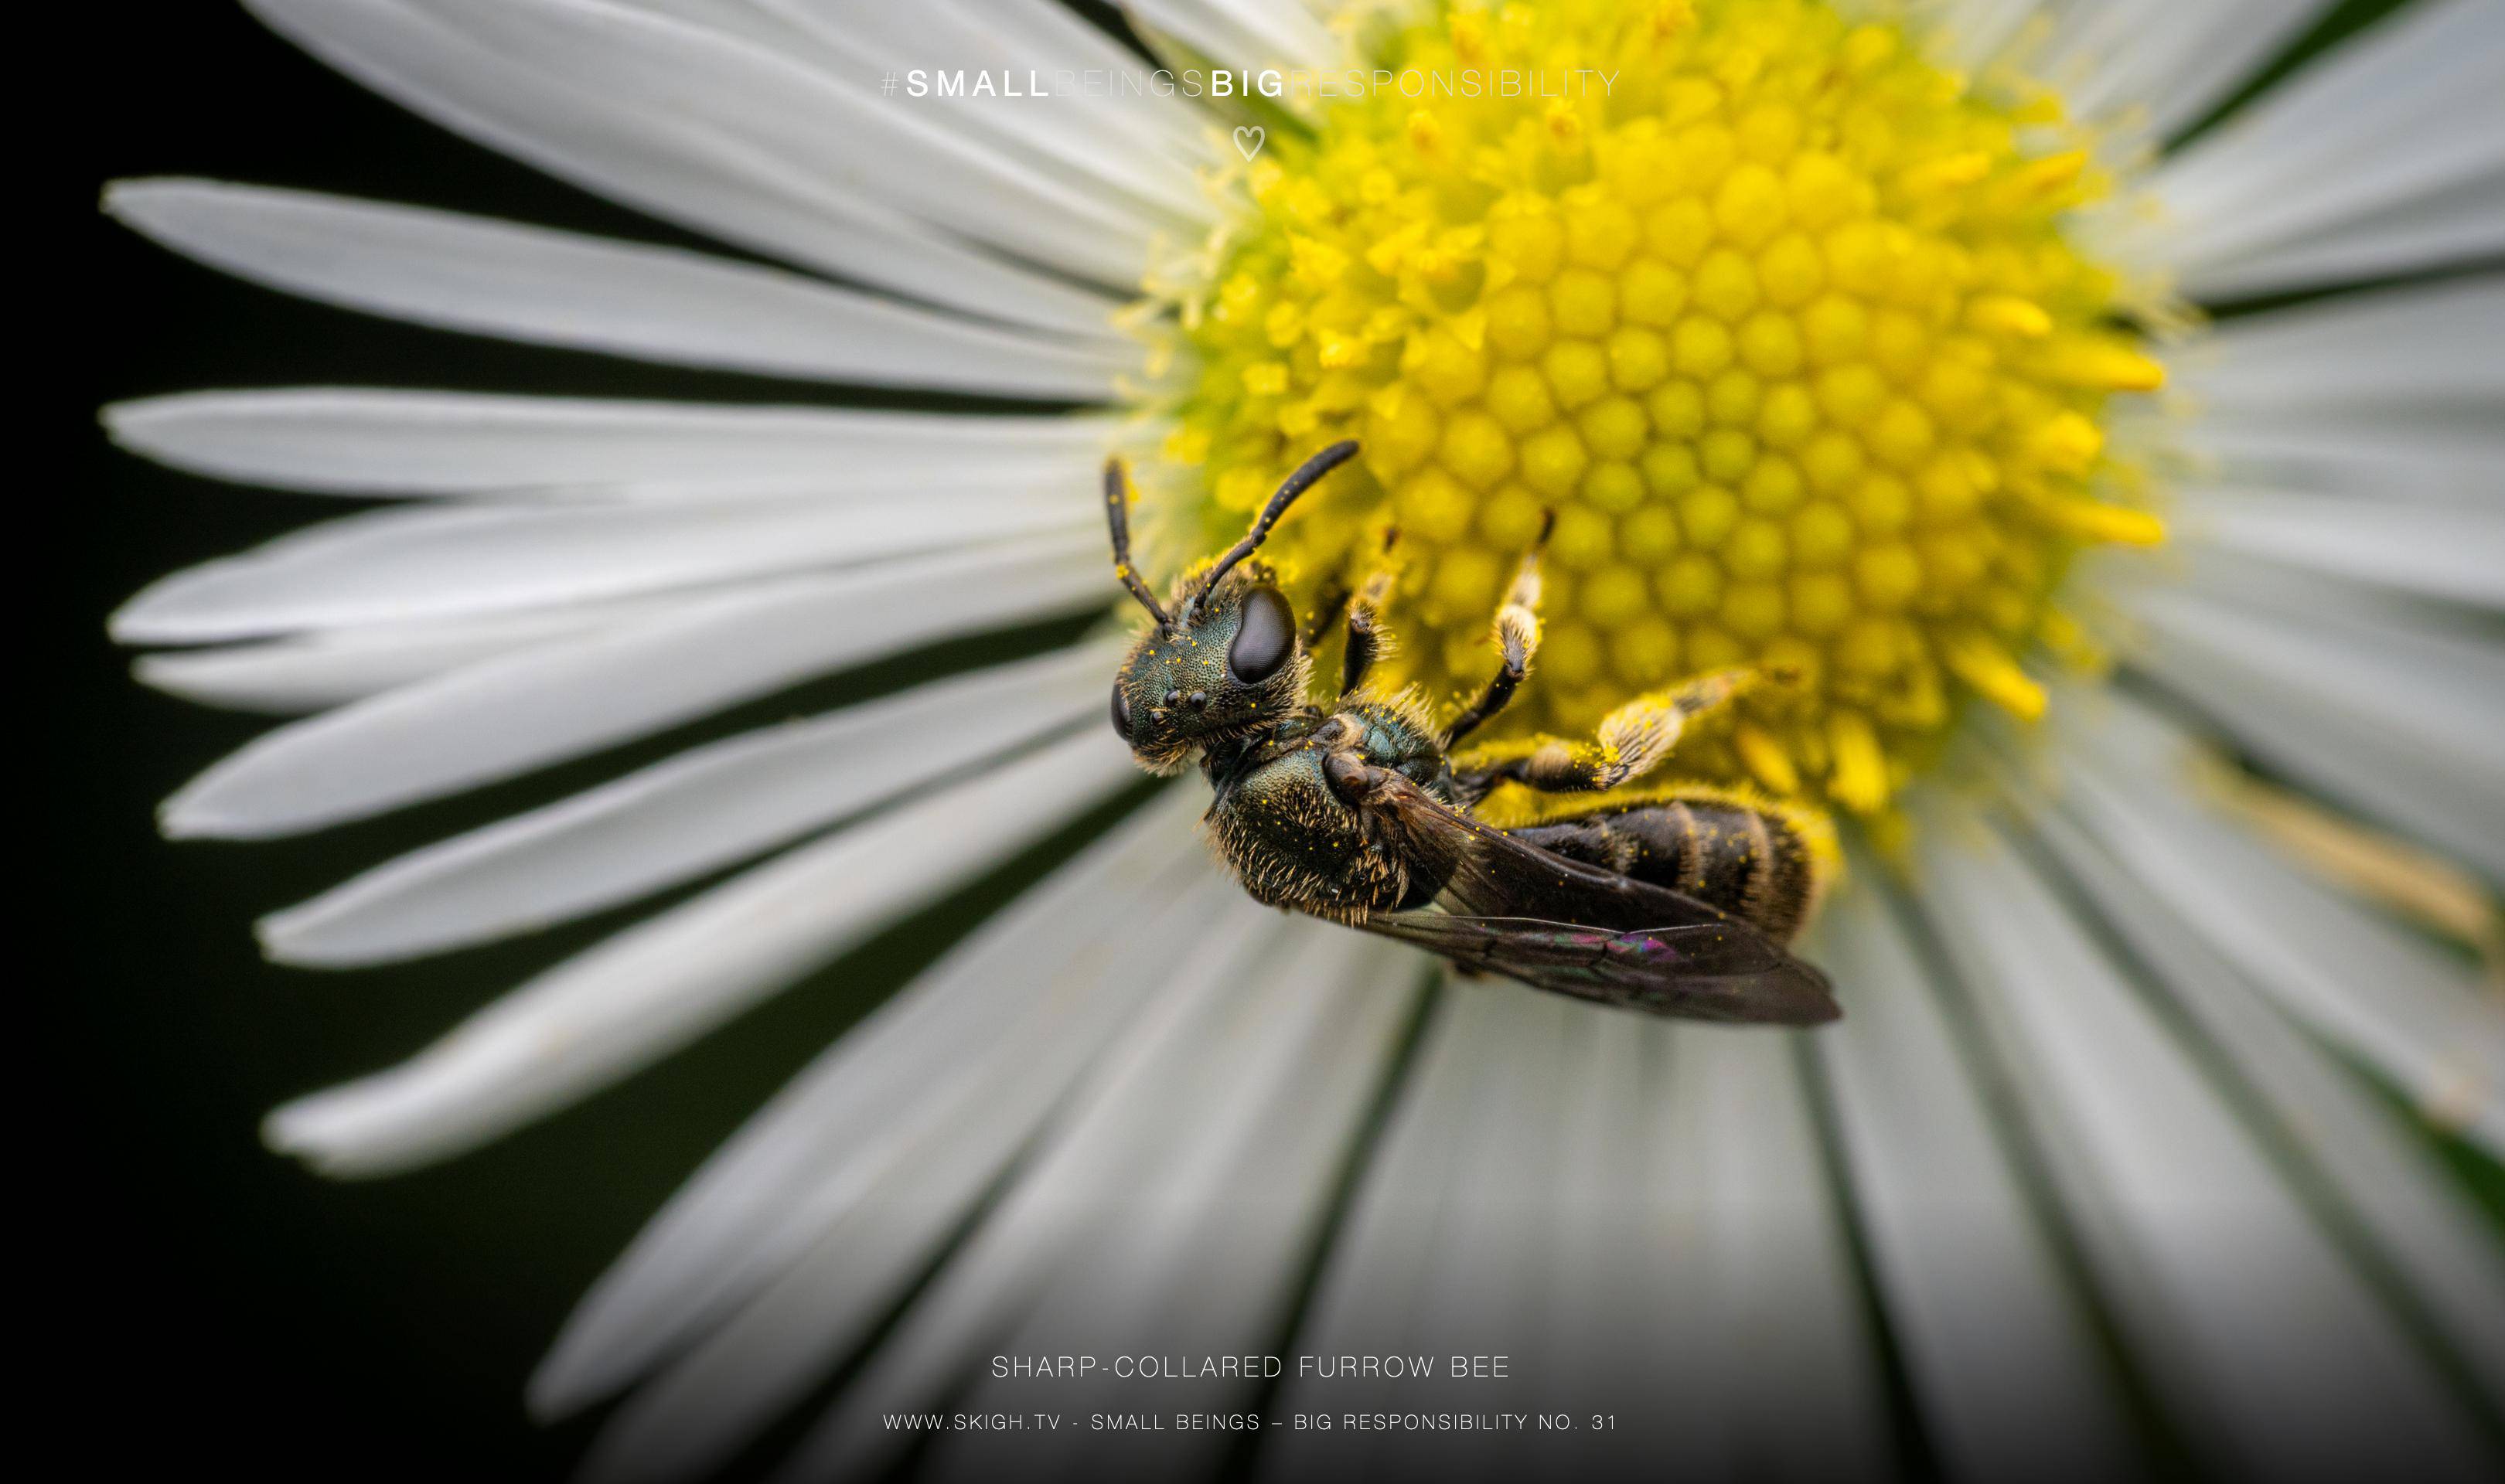 Sharp-collared furrow bee